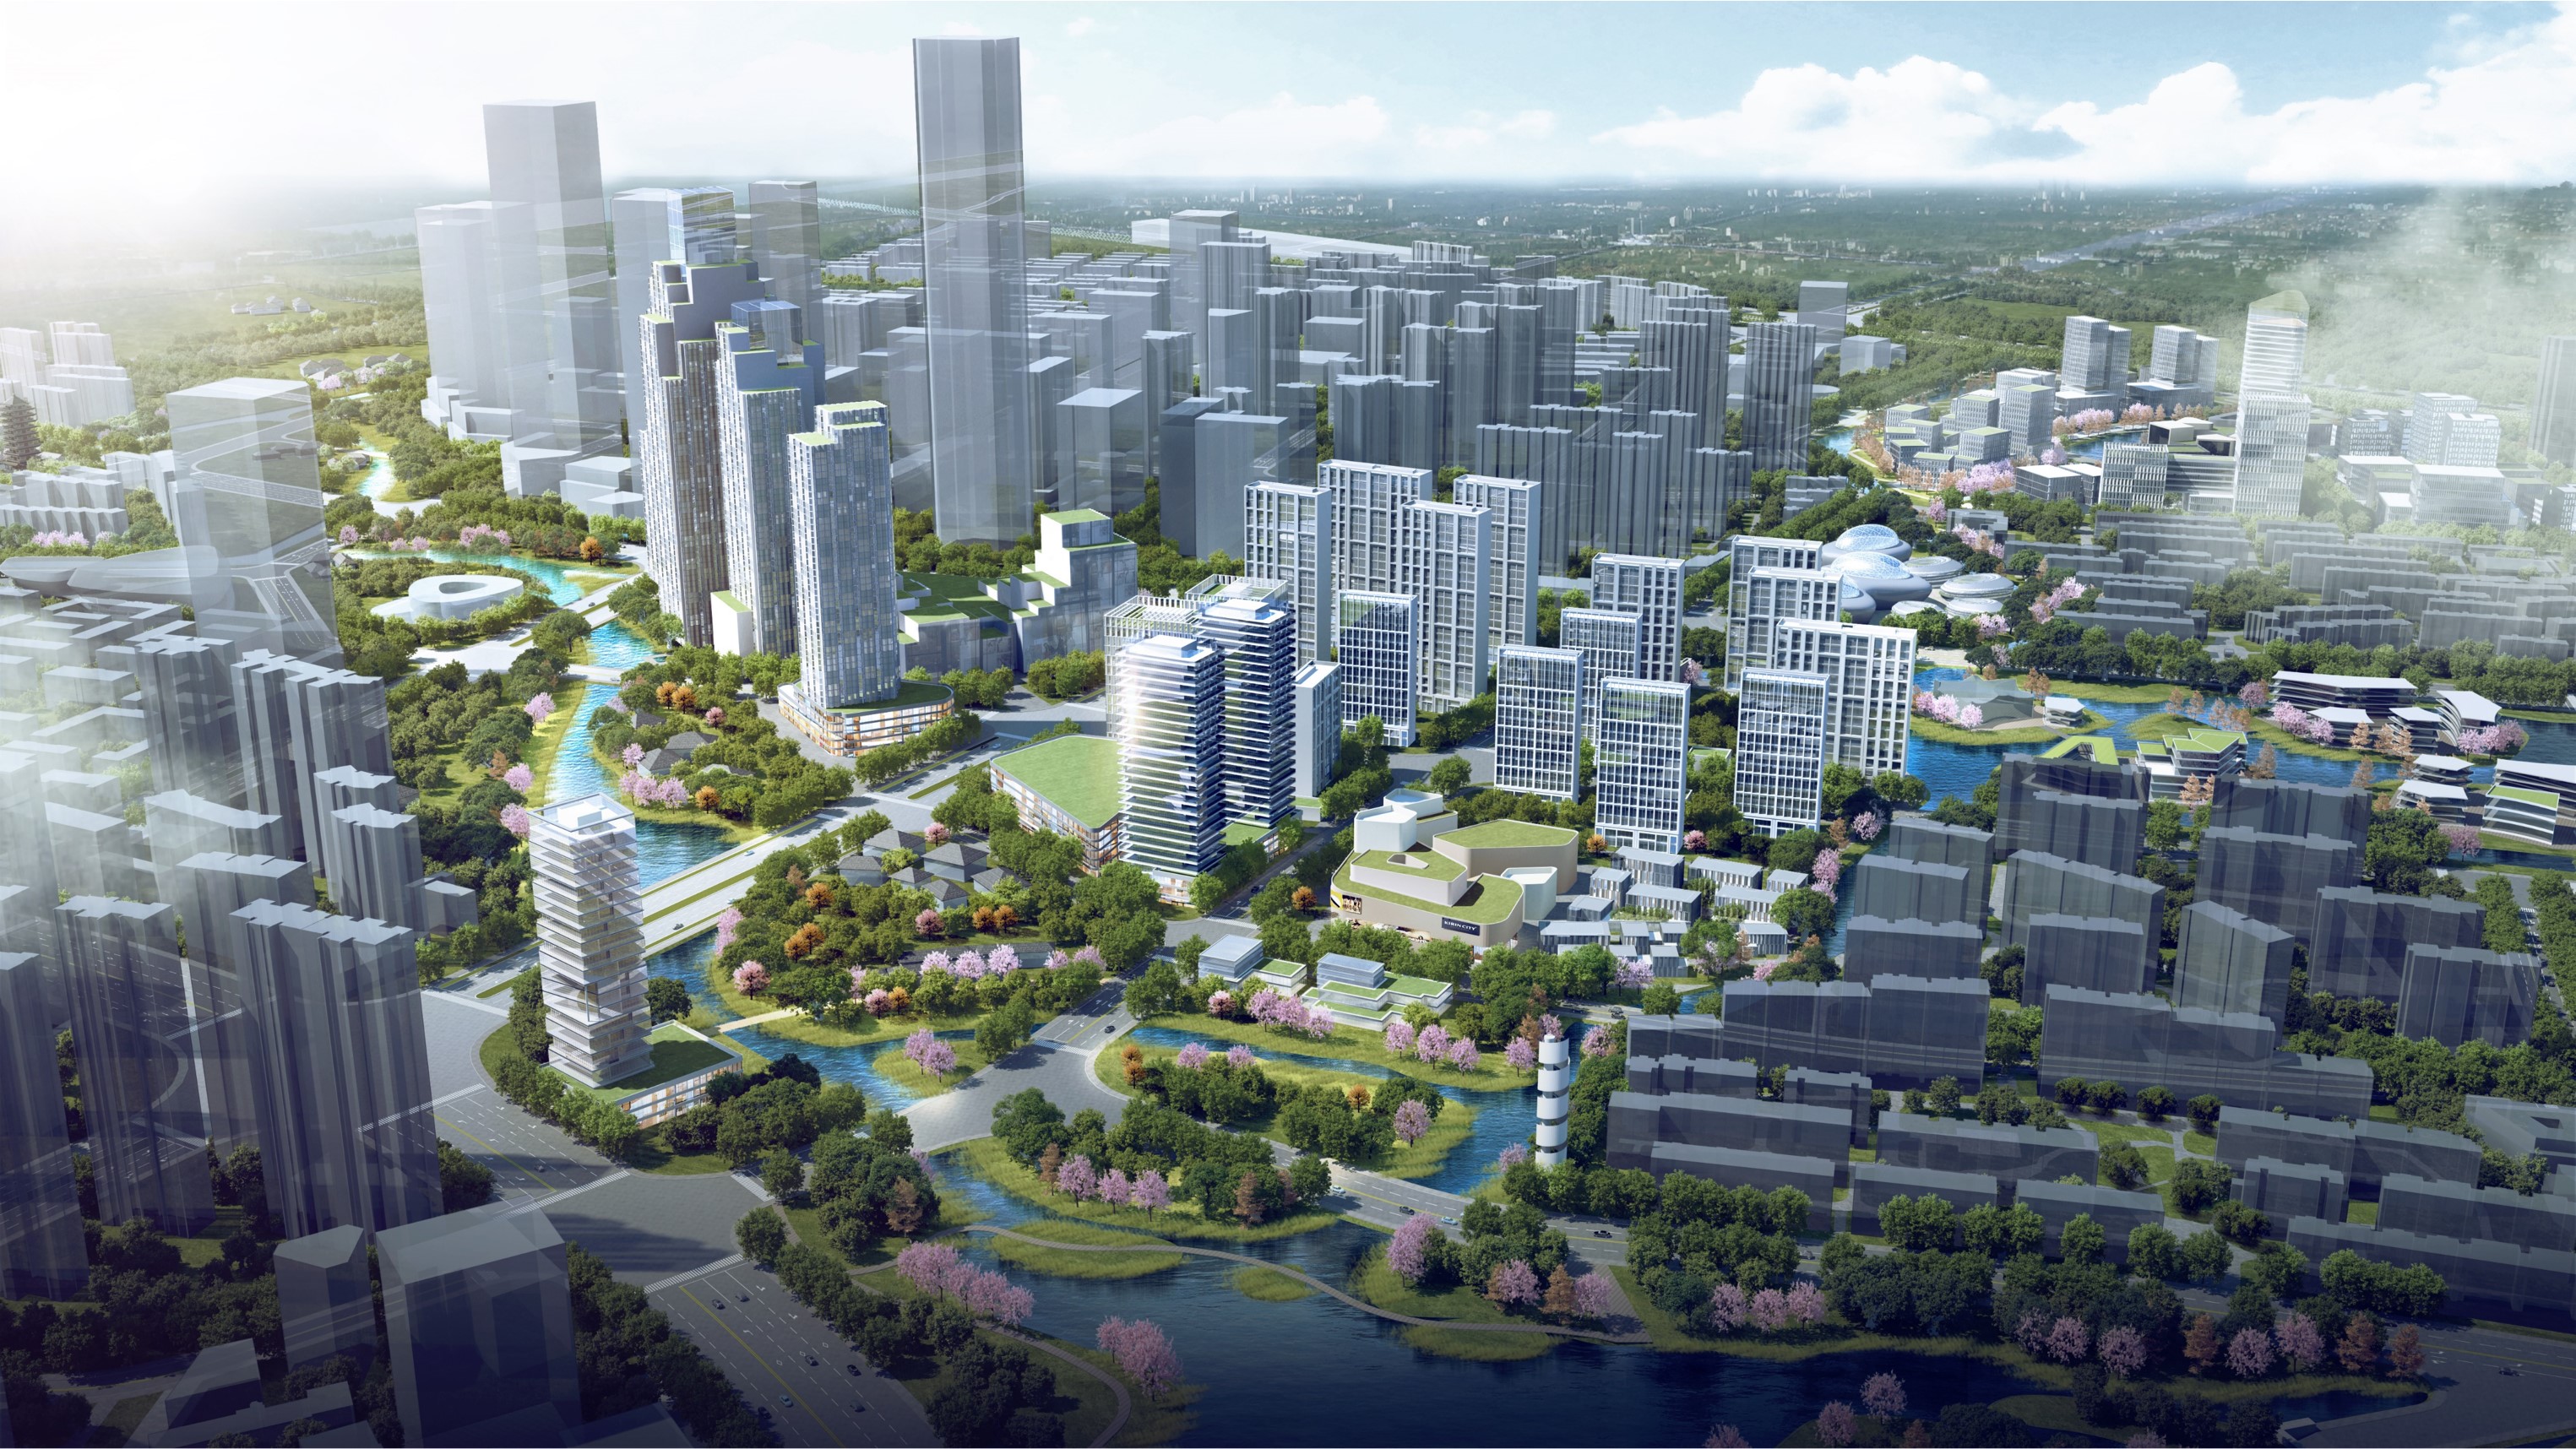 聚焦推动城市数字化转型,上海打造海纳小镇